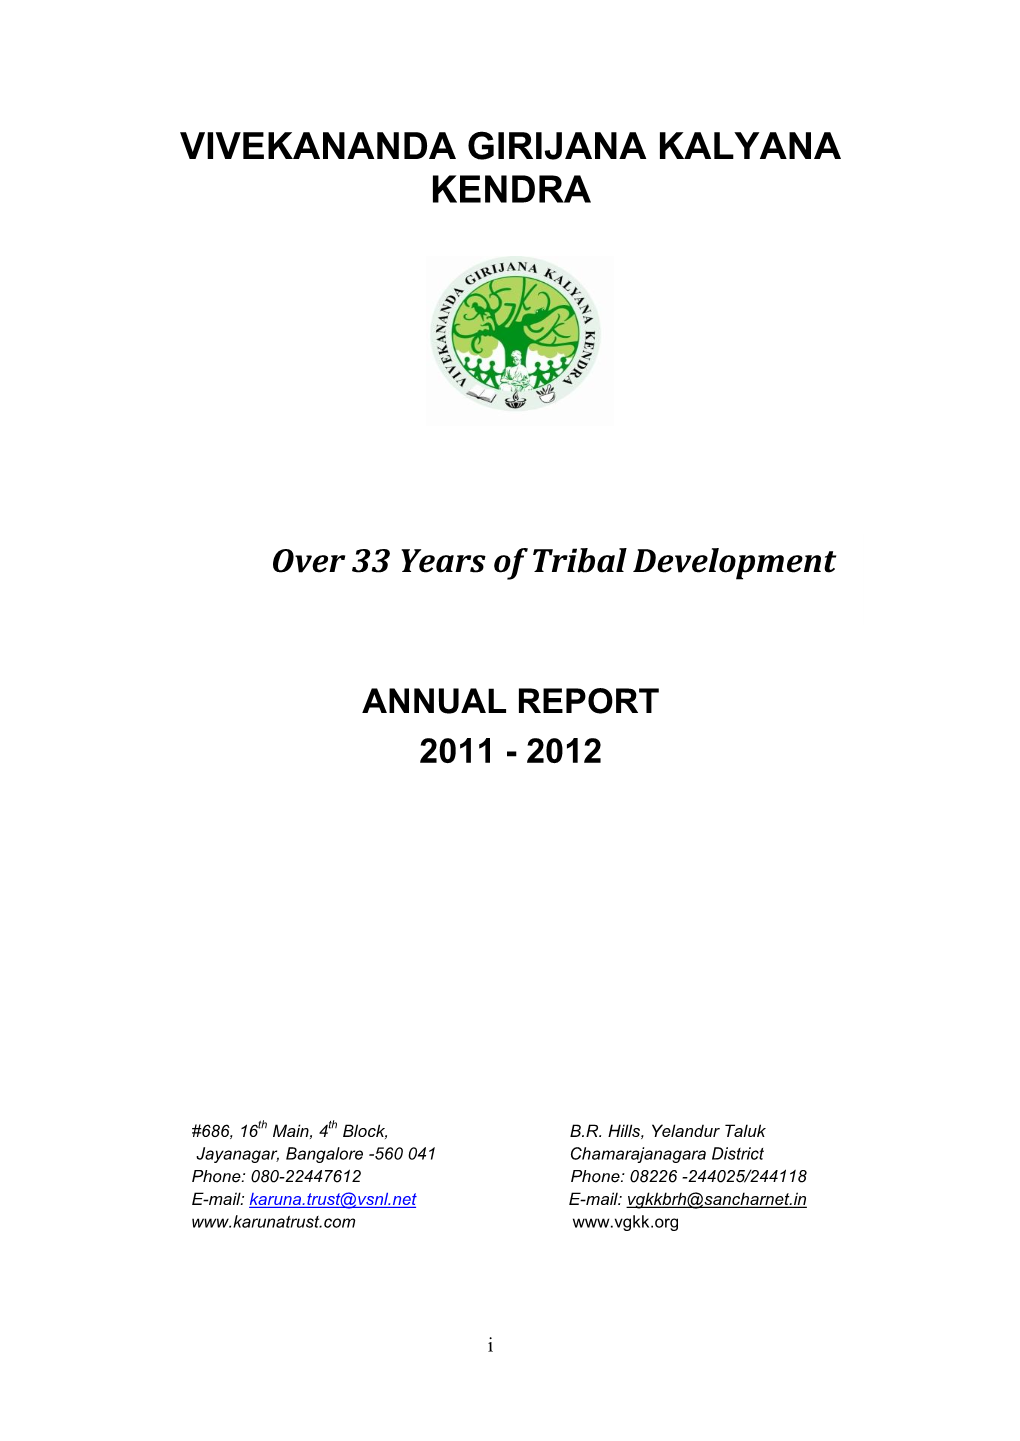 VGKK Annual Report 2011-2012